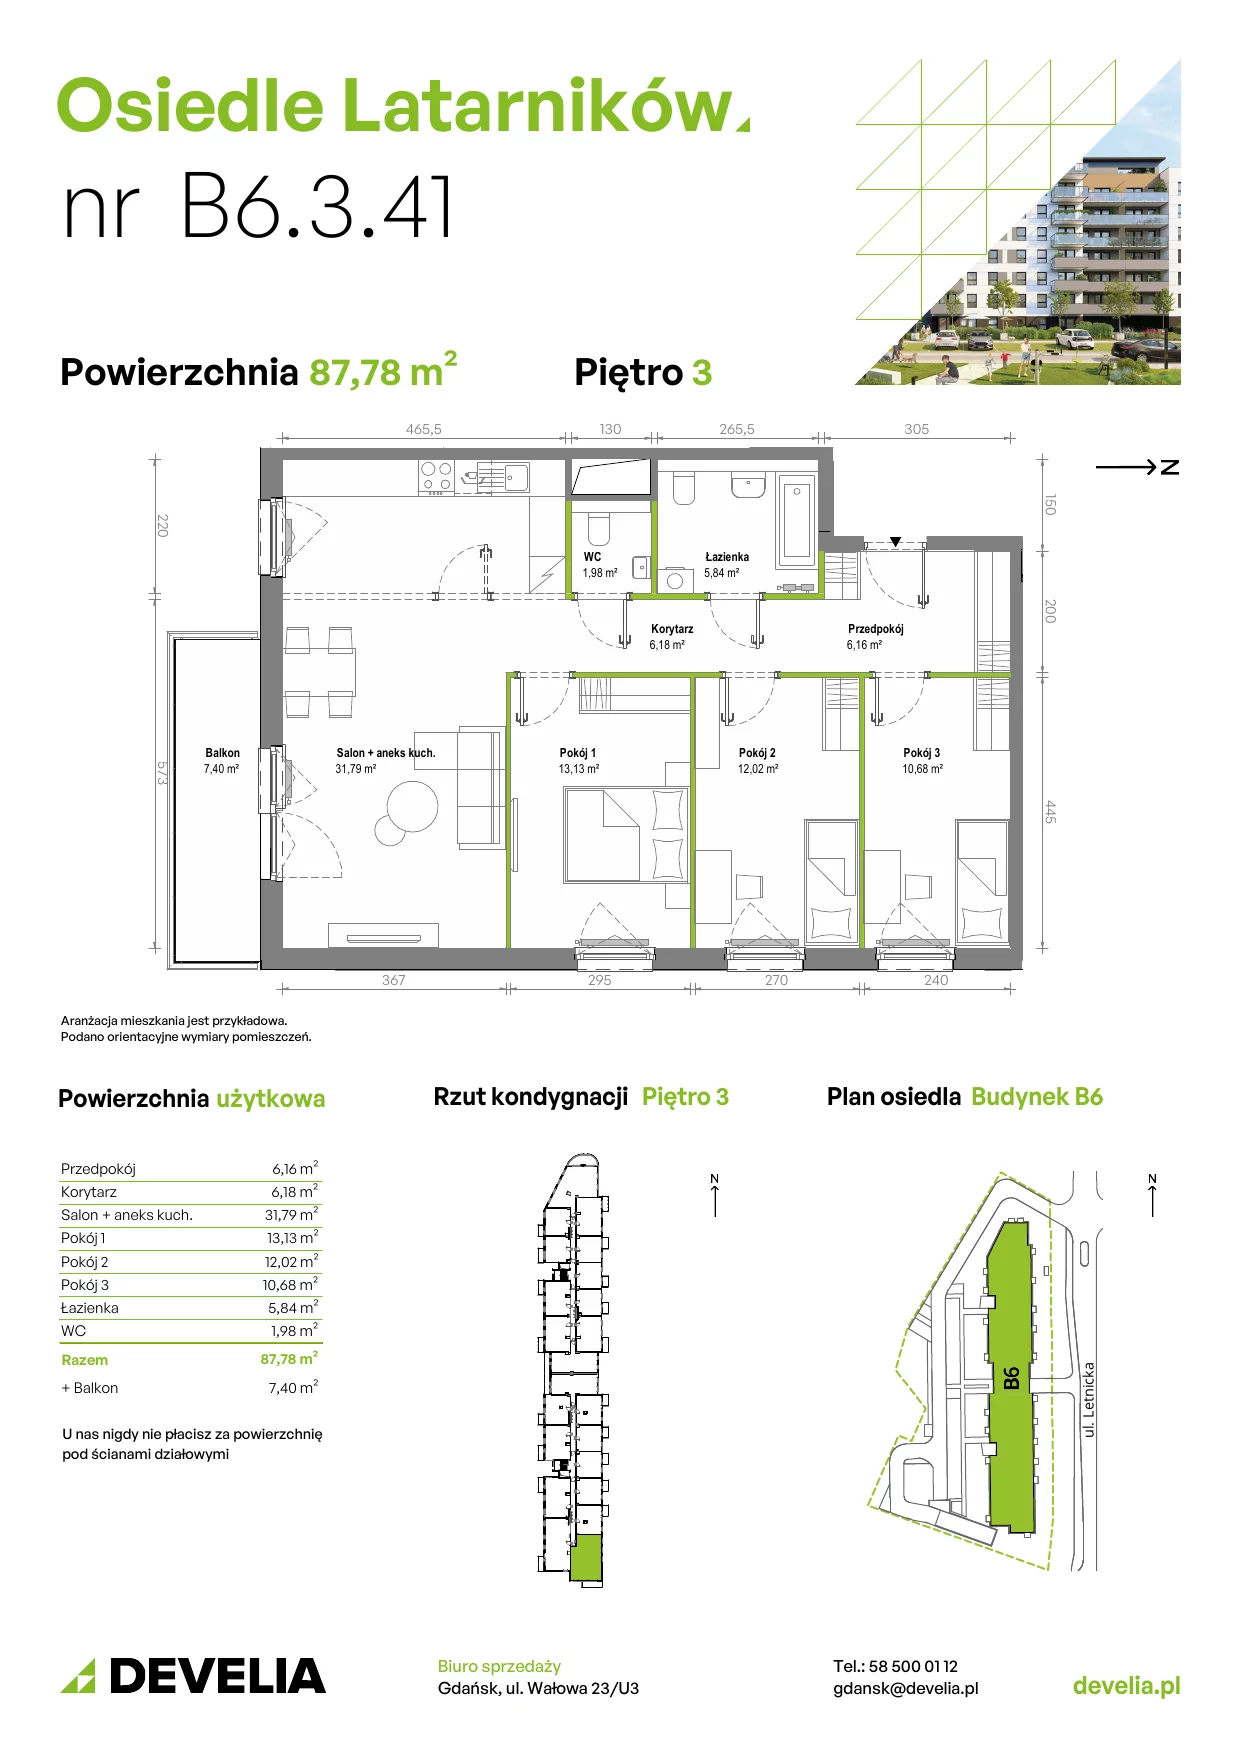 Mieszkanie 87,58 m², piętro 3, oferta nr B6.3.041, Osiedle Latarników, Gdańsk, Letnica, ul. Letnicka 1